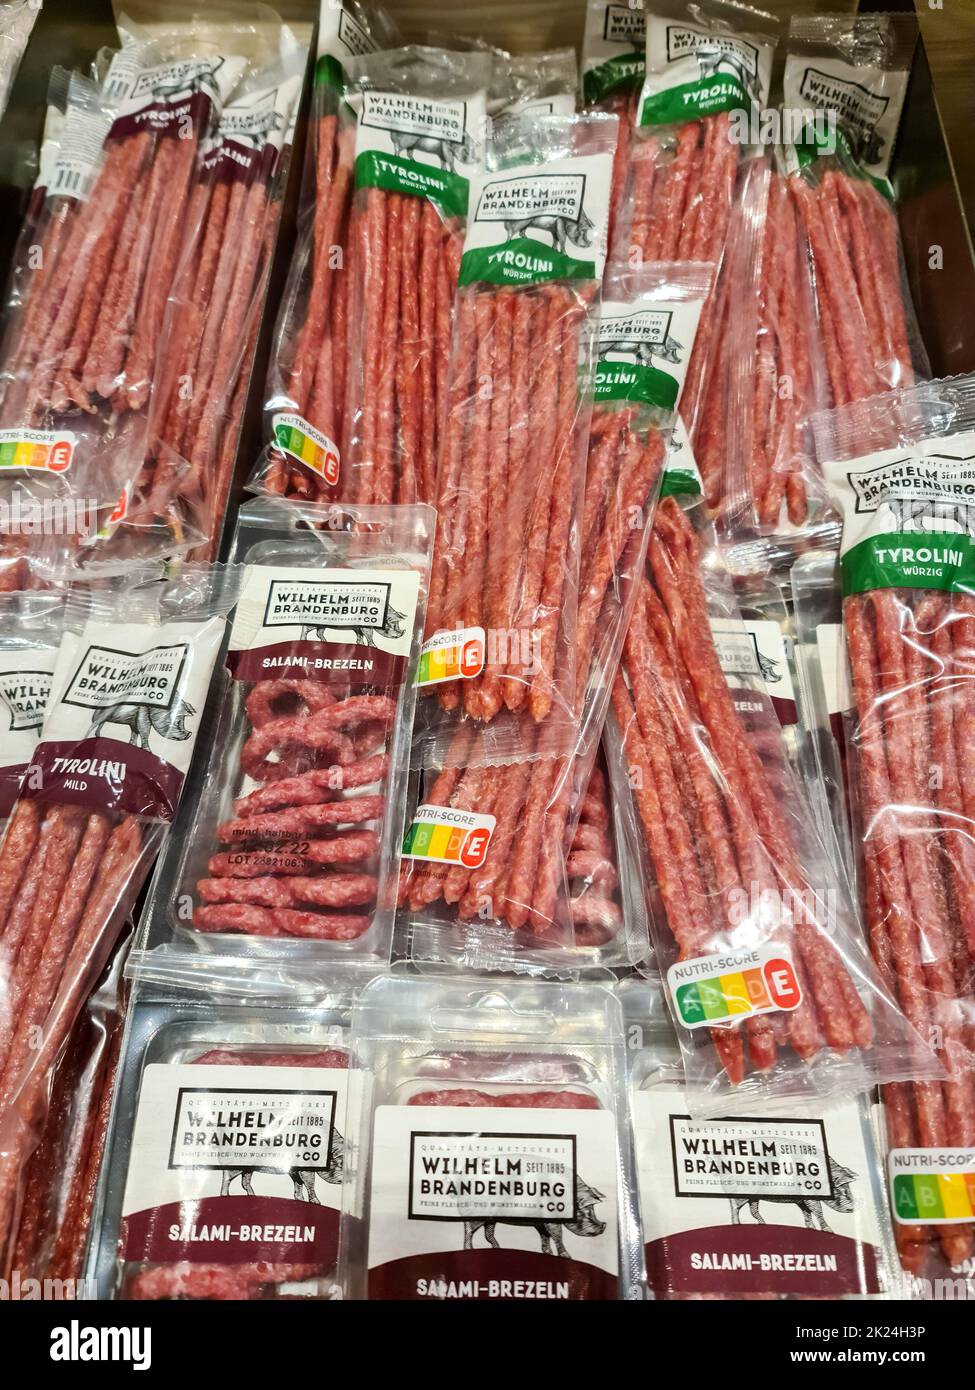 De nombreux produits de saucisse de salami de la société Wilhelm Brandenburg dans un supermarché Banque D'Images